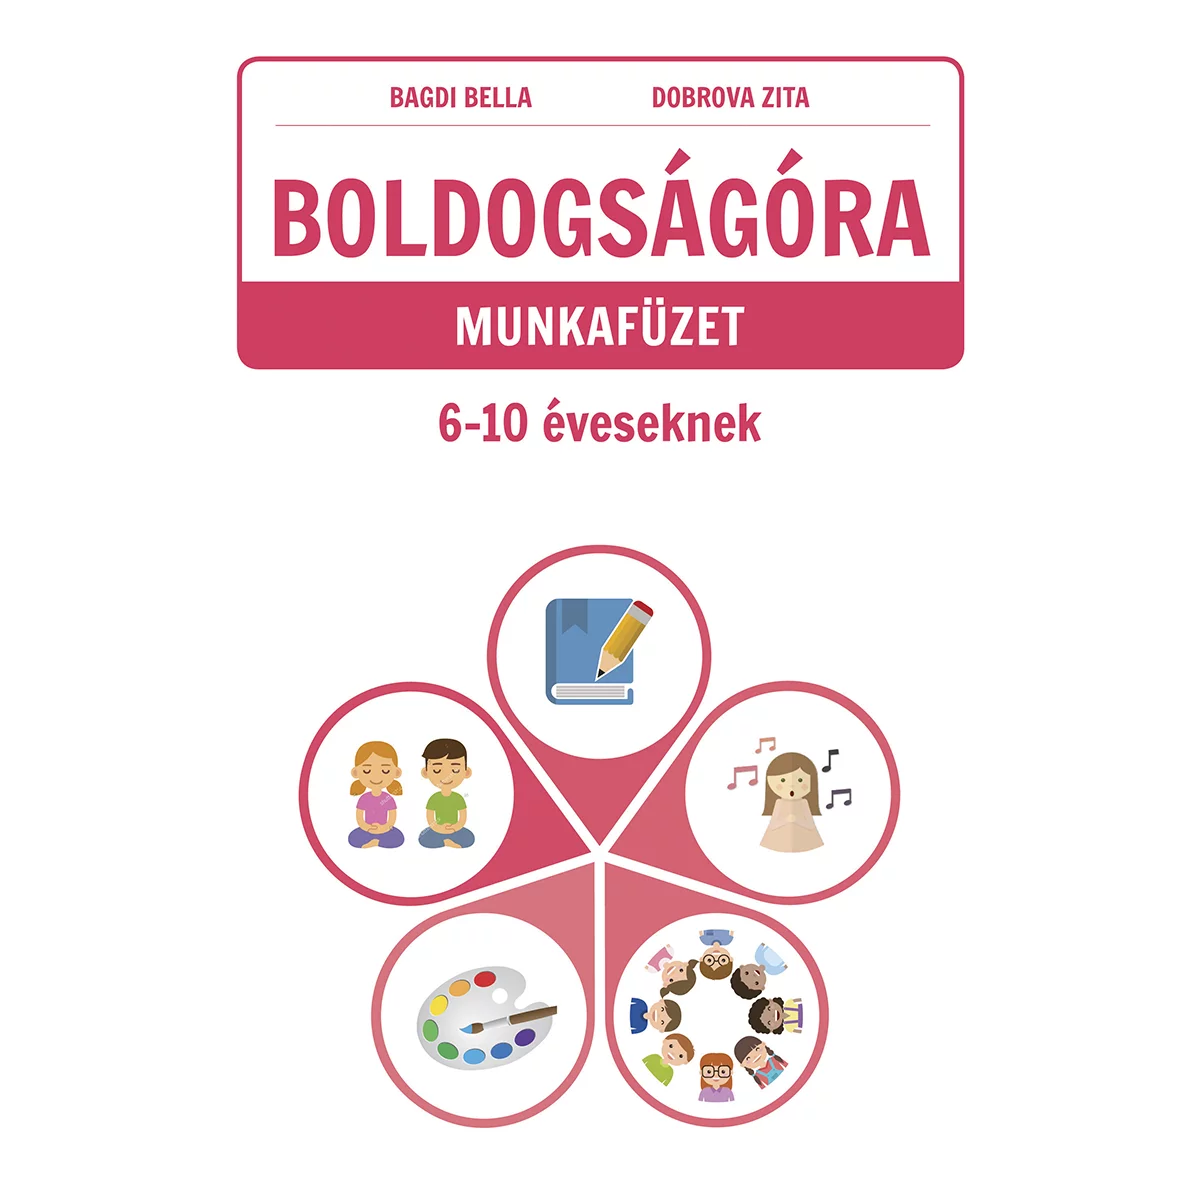 Bagdi Bella, Dobrova Zita: Boldogságóra munkafüzet 6-10 éveseknek